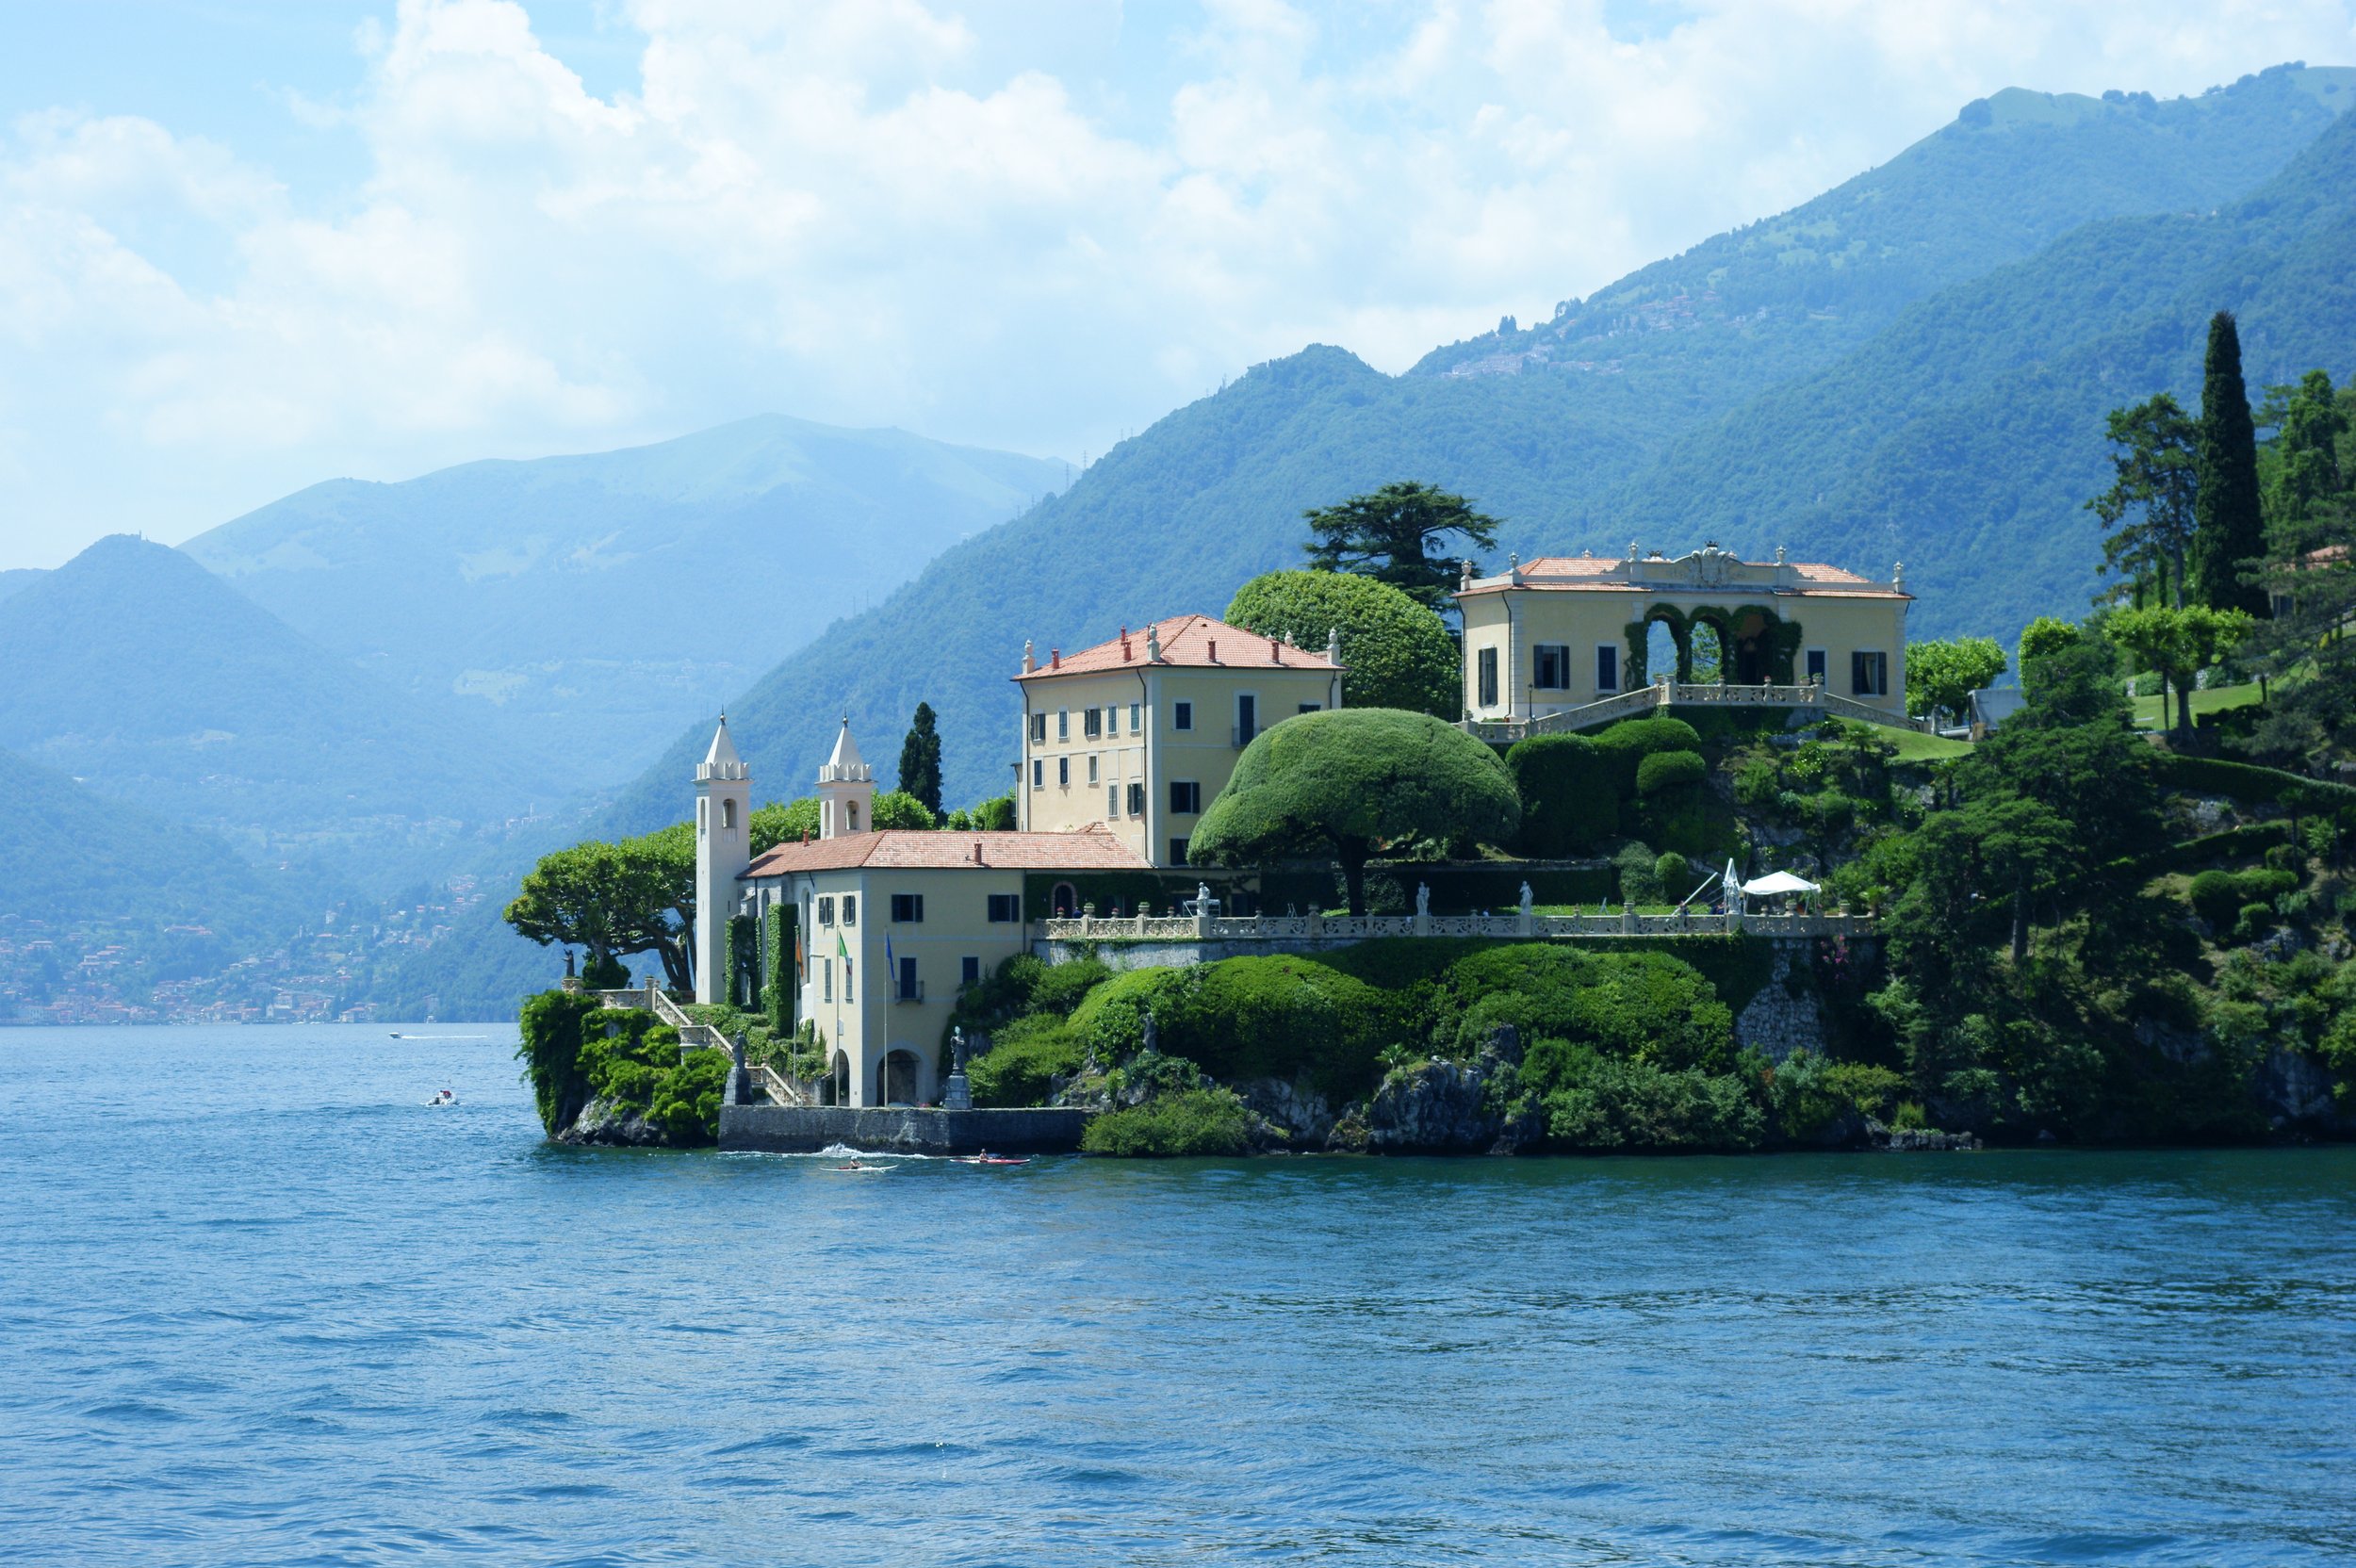 Italian Villa on Lake.jpg